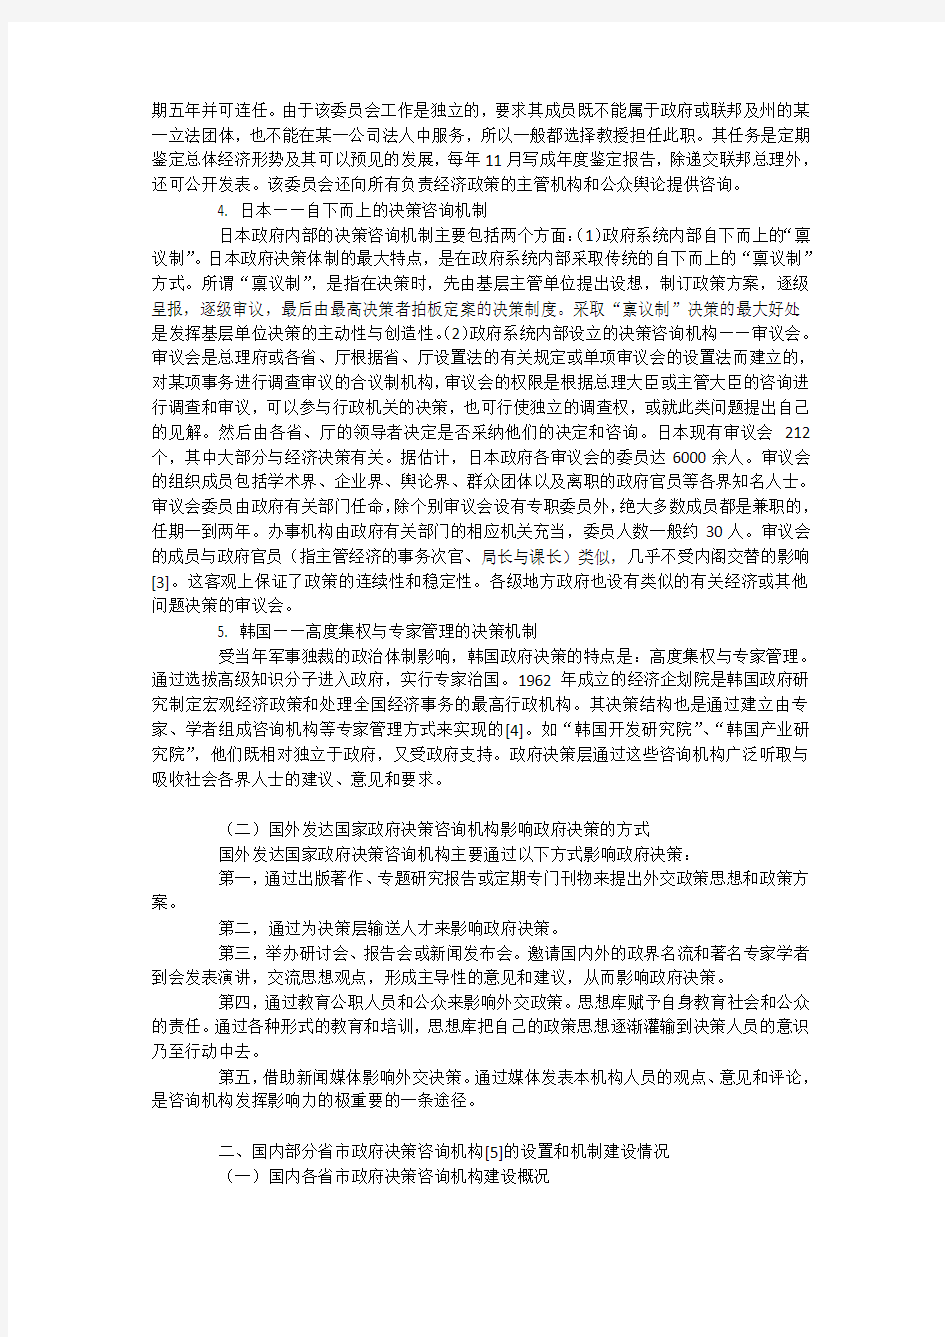 国内外决策咨询机制及完善广东省政府重大科技决策咨询工作机制的建议